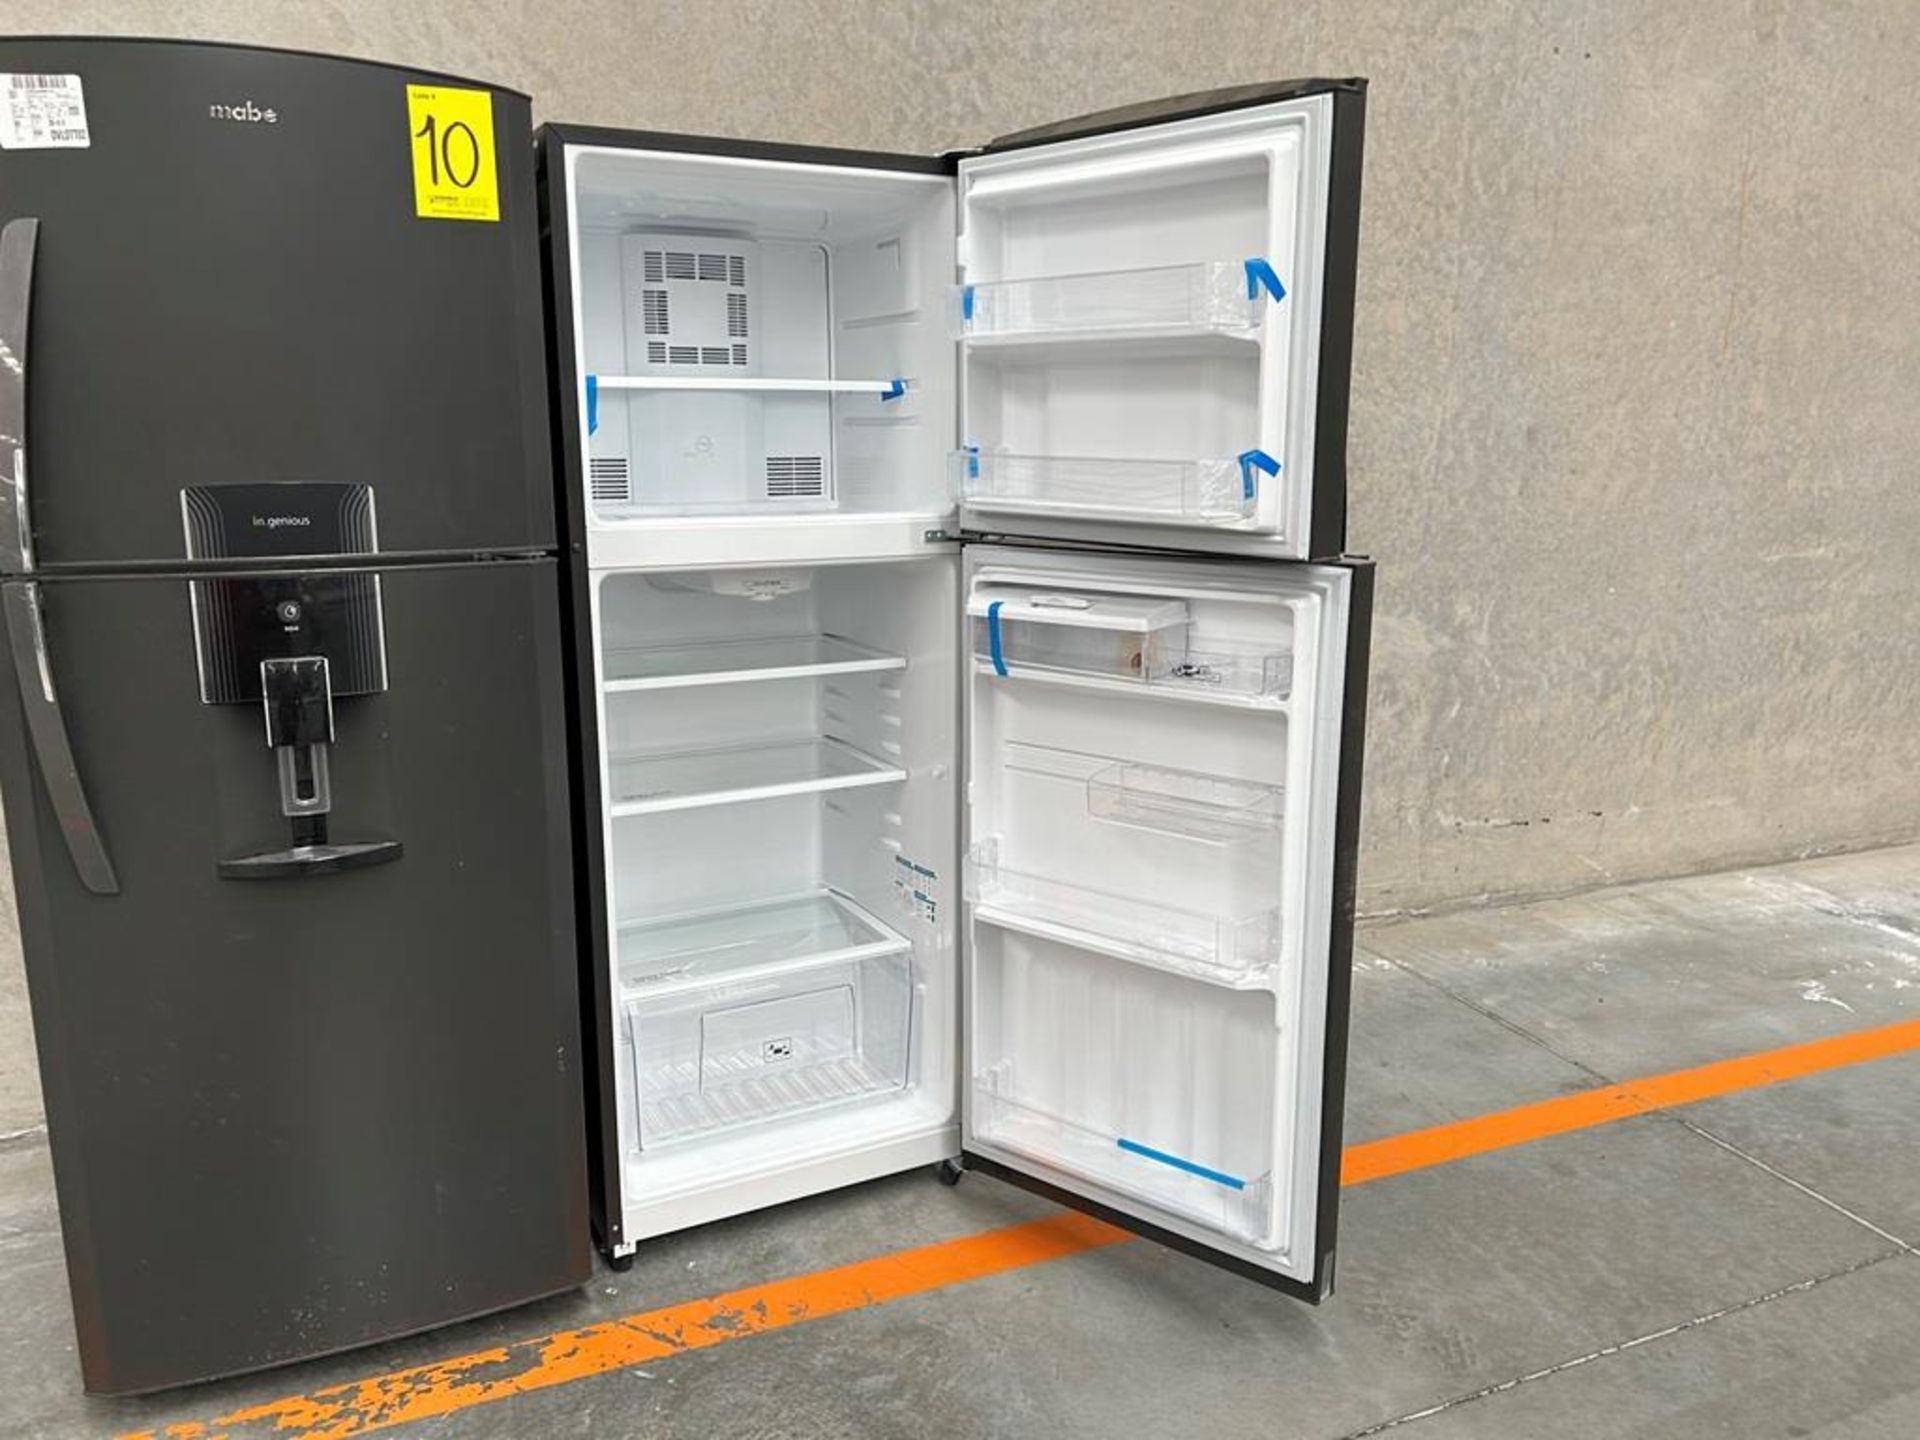 Lote de 2 refrigeradores contiene: 1 Refrigerador con dispensador de agua Marca MABE, Modelo RME360 - Image 10 of 18